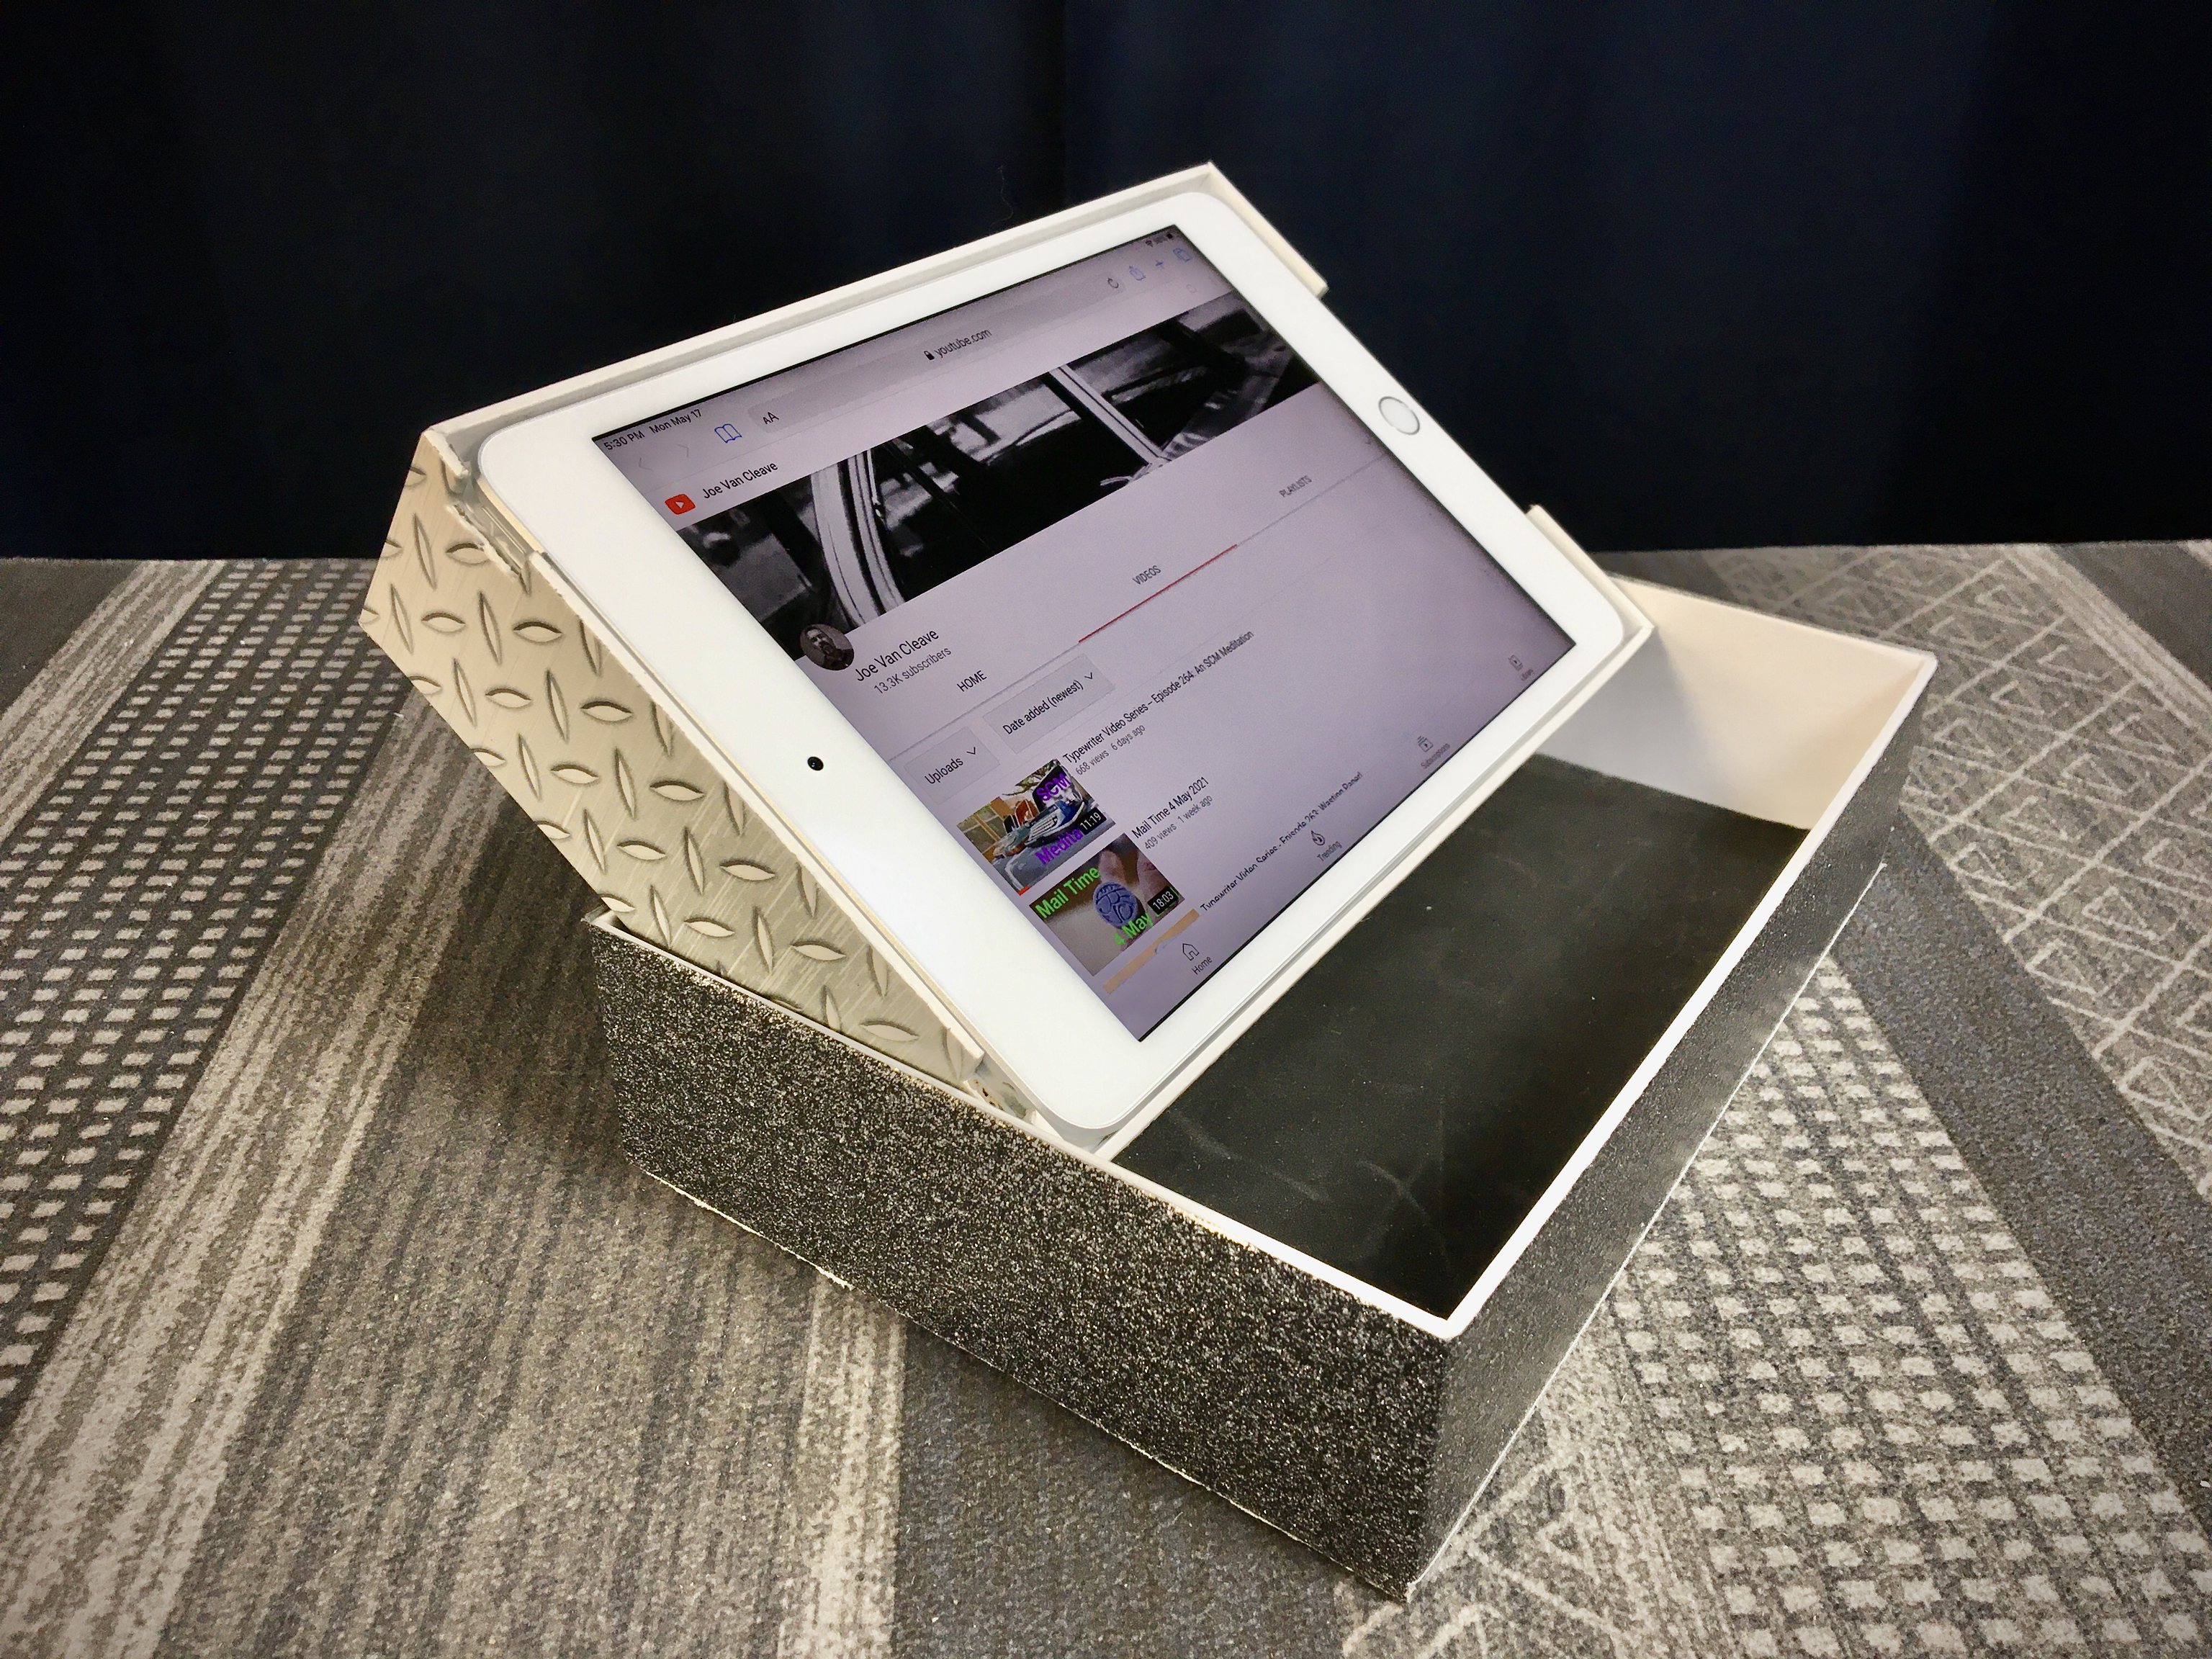 iPad Mini Box